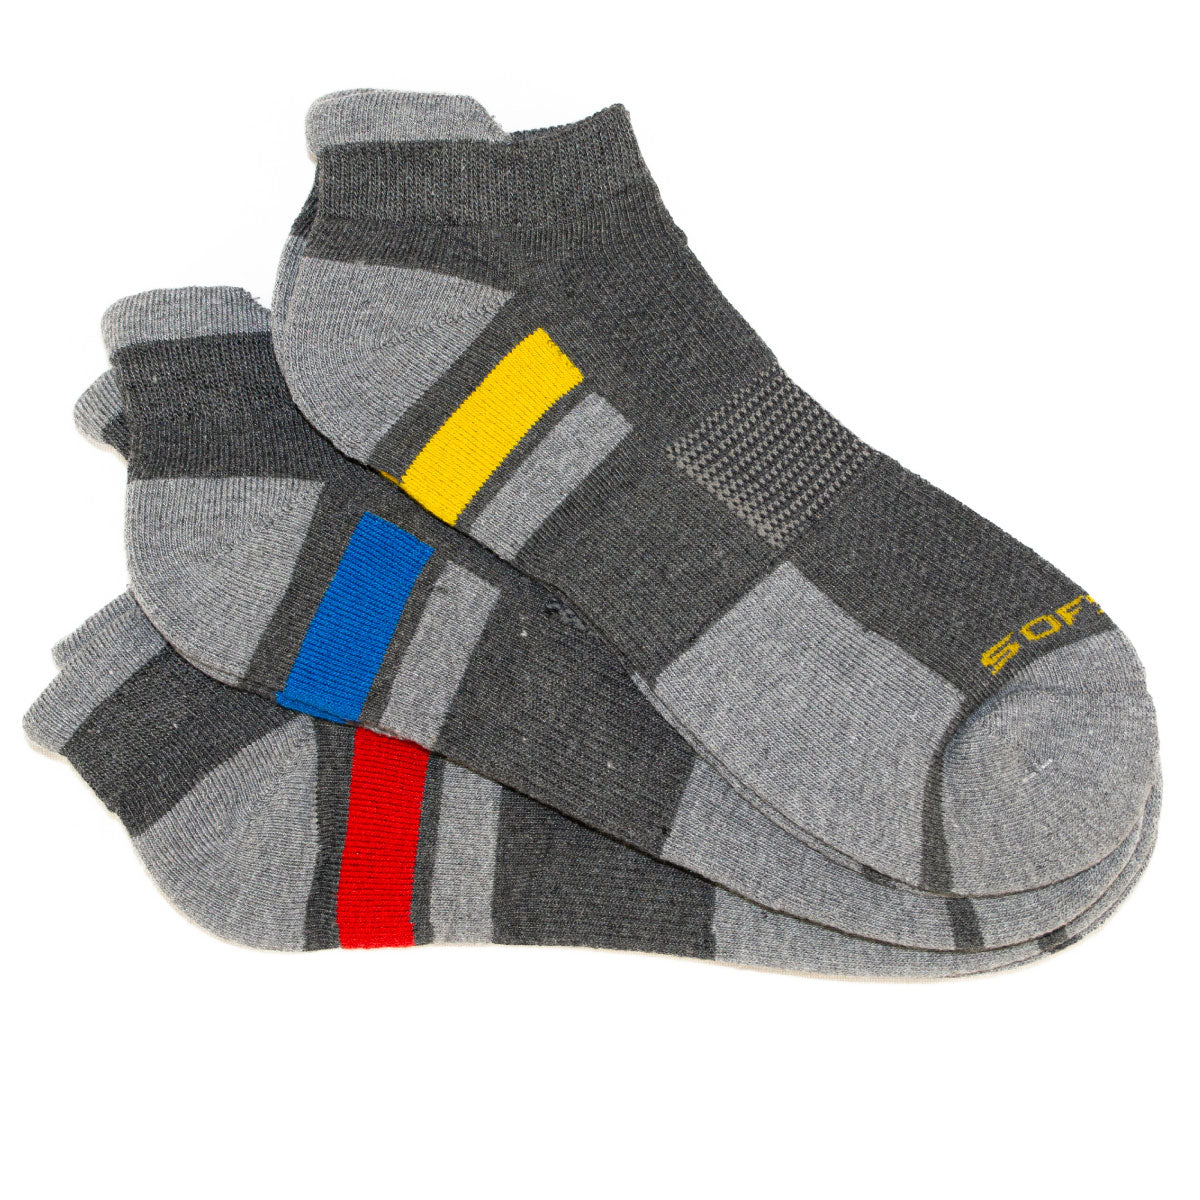 SofSole Multi Sport Low Cut Cushion Socks - Mens - Grey/Red